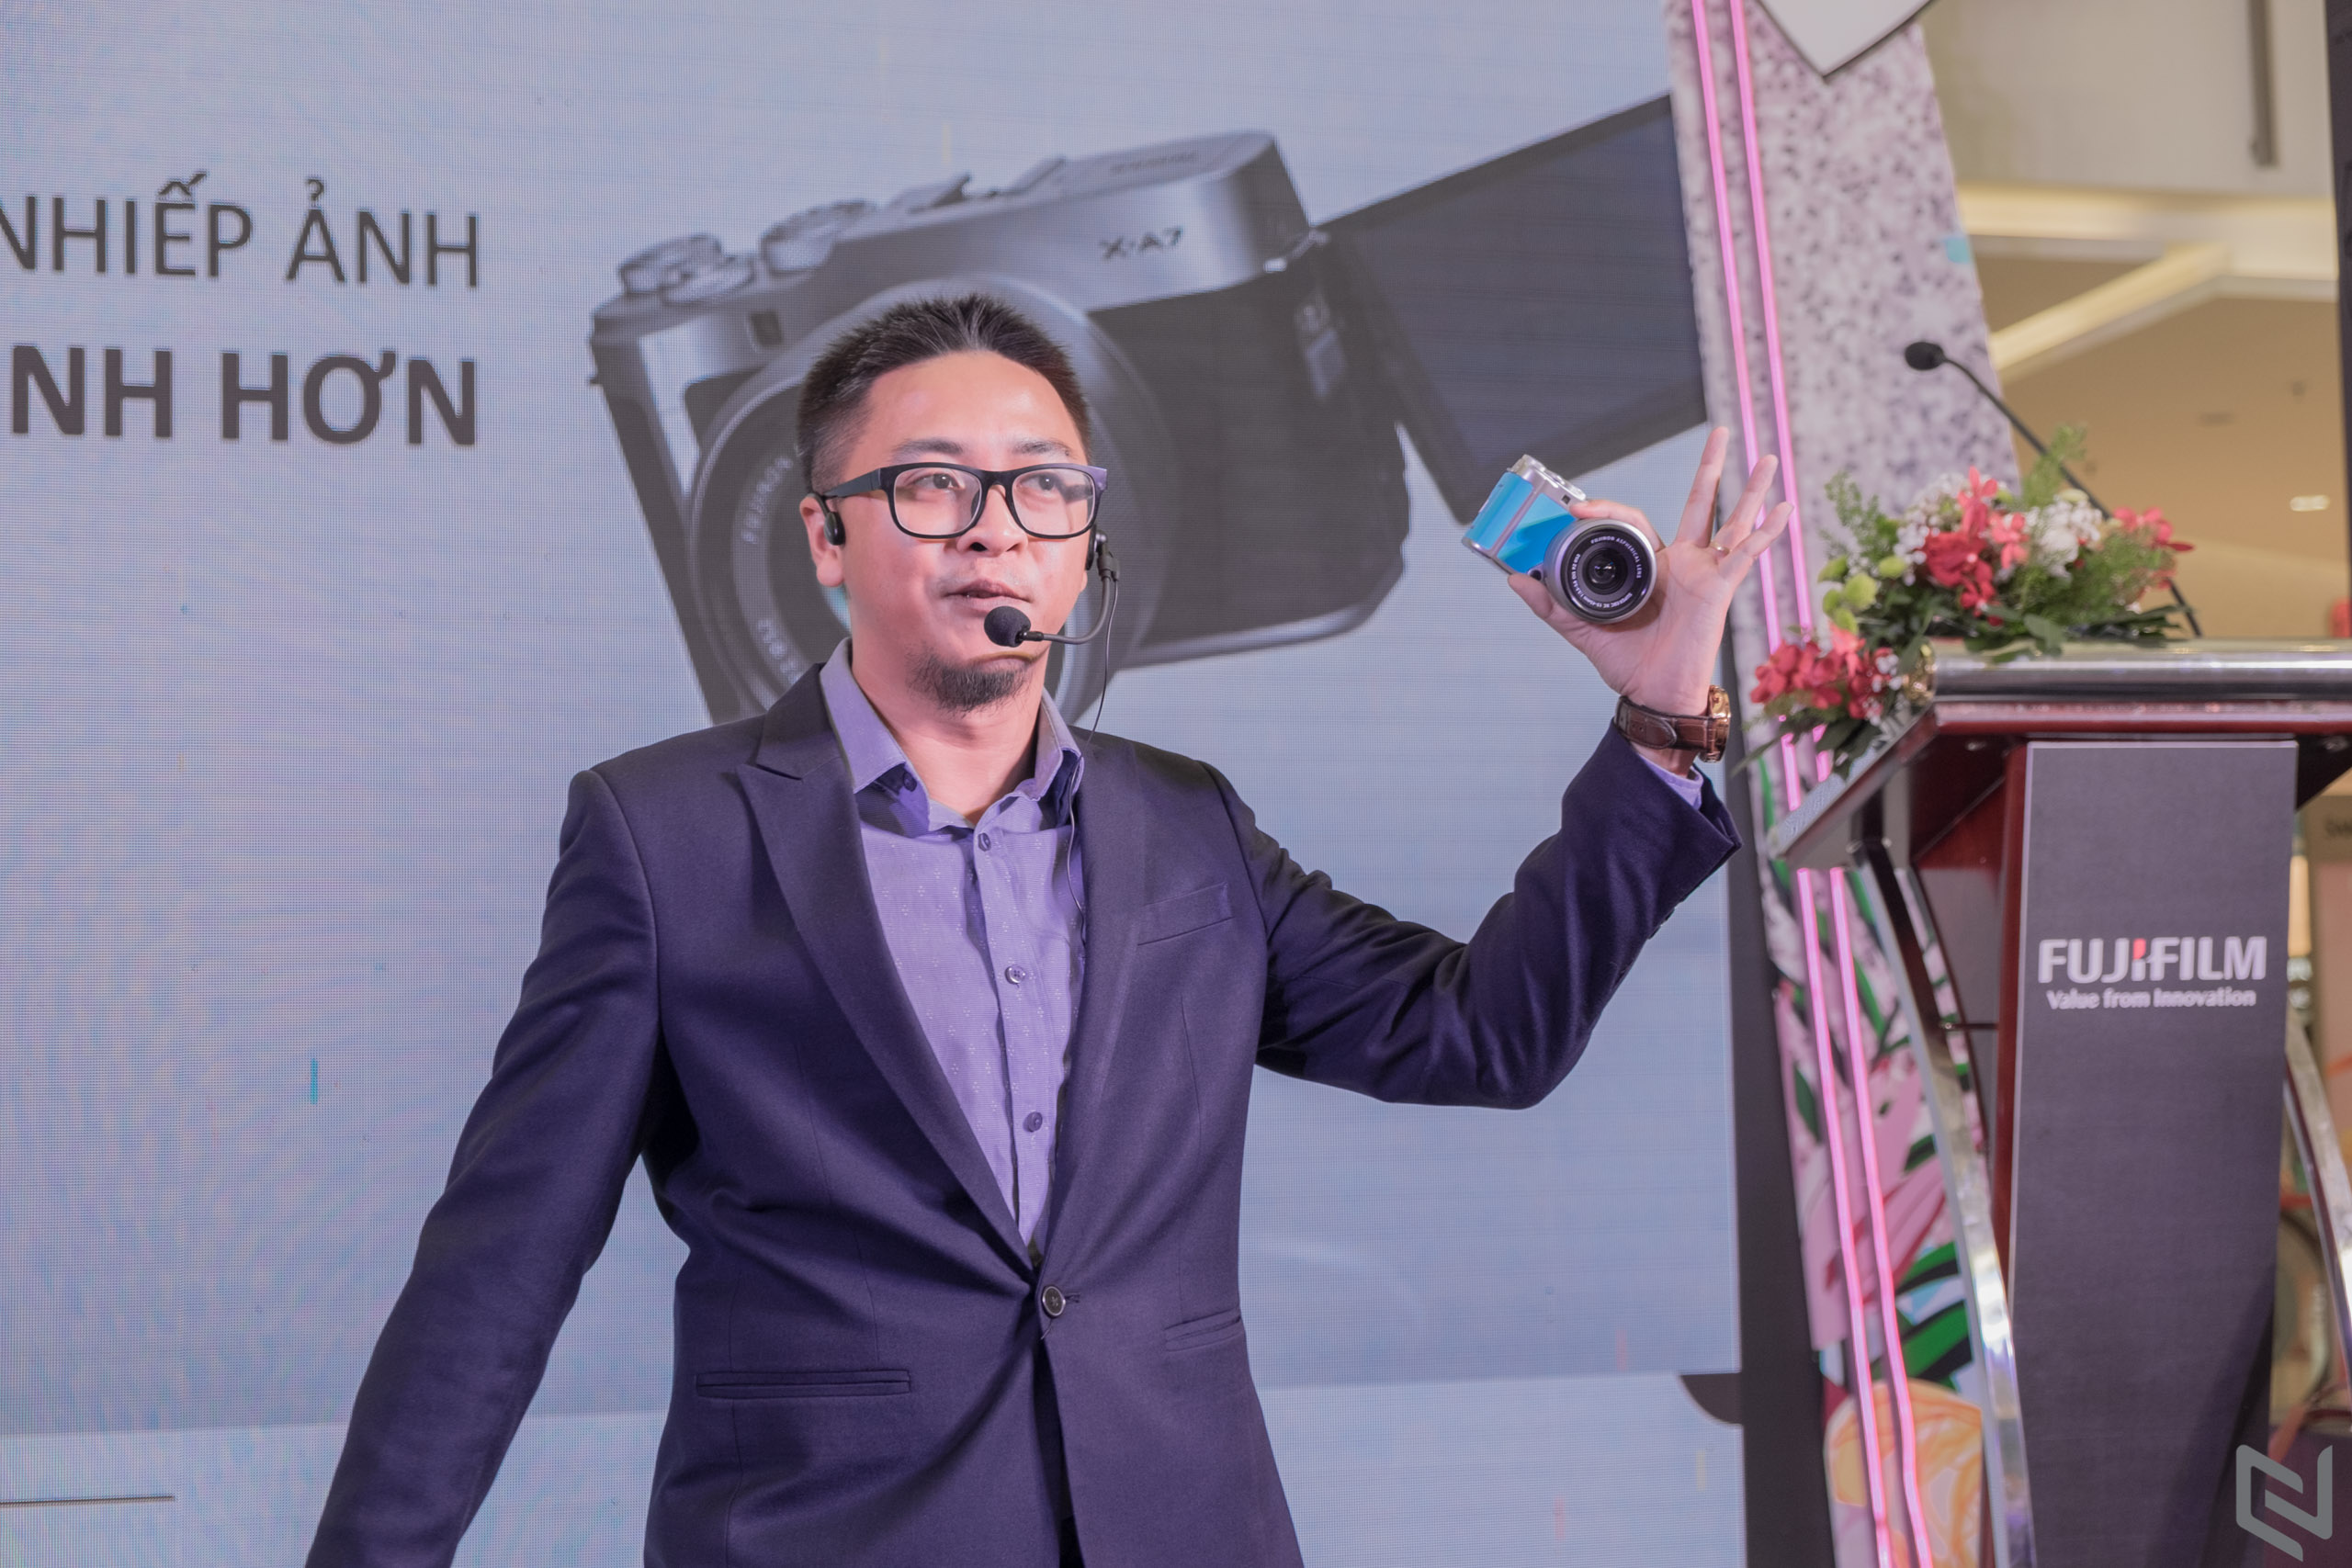 Máy ảnh Fujifilm X-A7 ra mắt thị trường Việt Nam: quay phim 4k, lấy nét nhanh, nhỏ gọn phù hợp với vlogger và người dùng nhập môn, giá chỉ 15,990,000 đồng